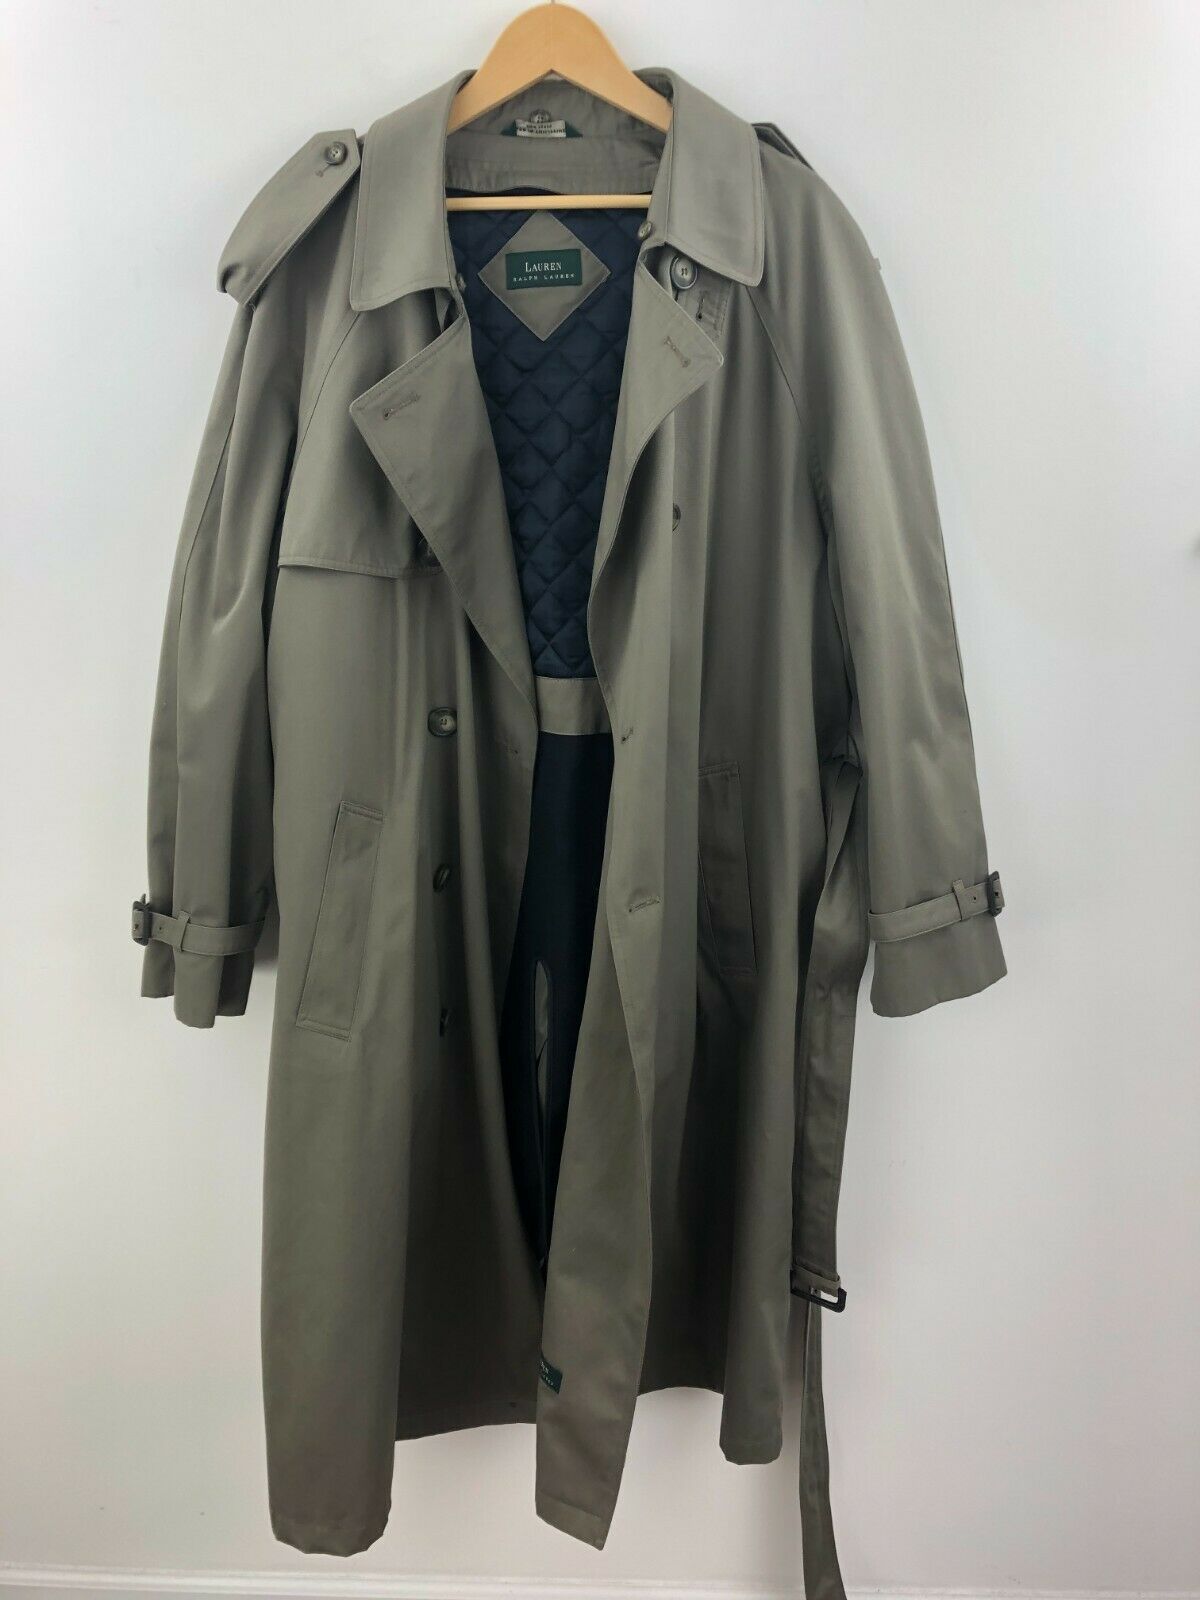 Lauren Ralph Lauren Long Trench Coat Jacket and similar items